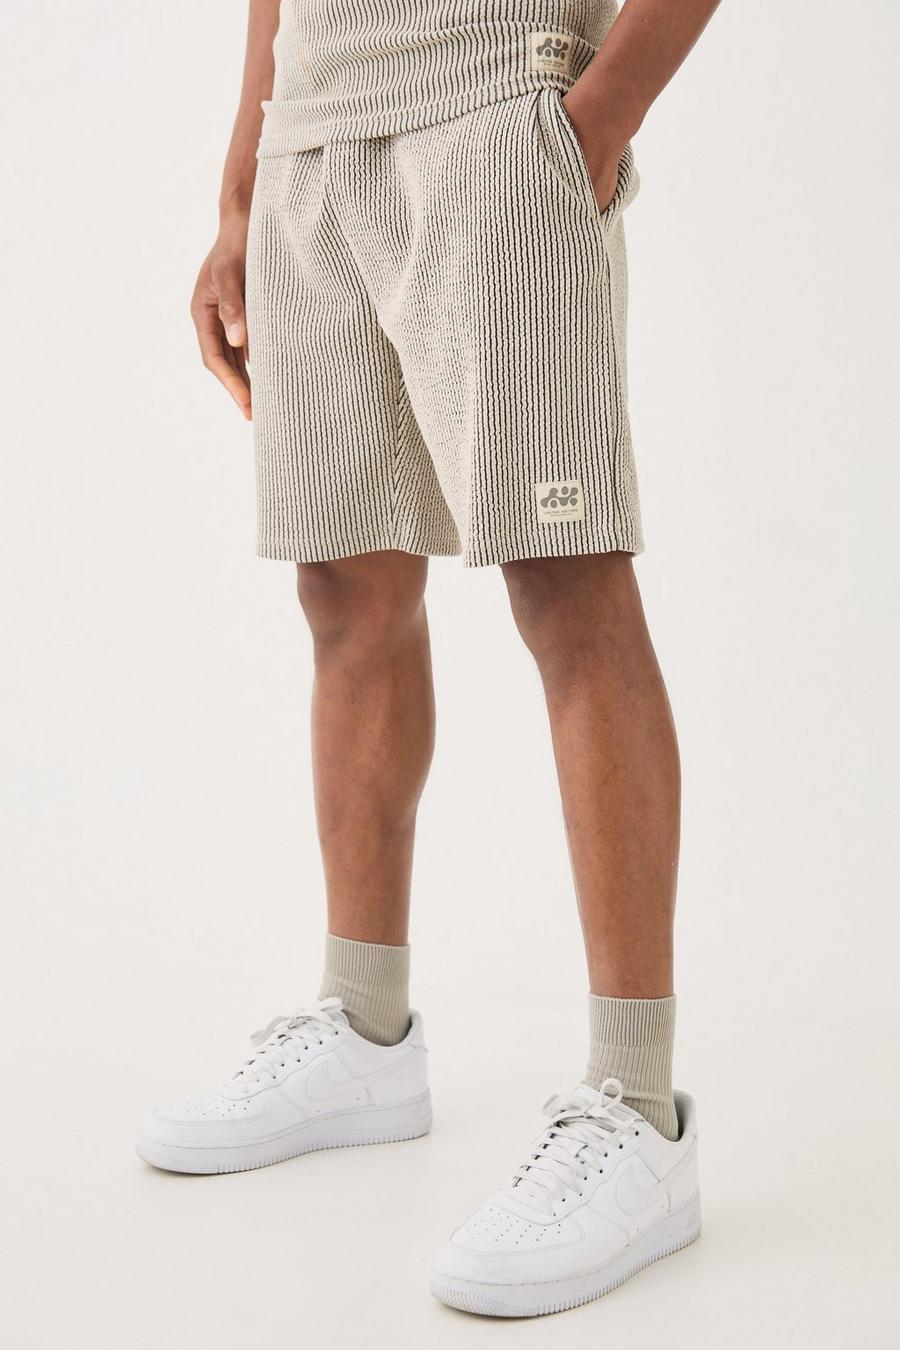 Lockere mittellange strukturierte Shorts, Grey